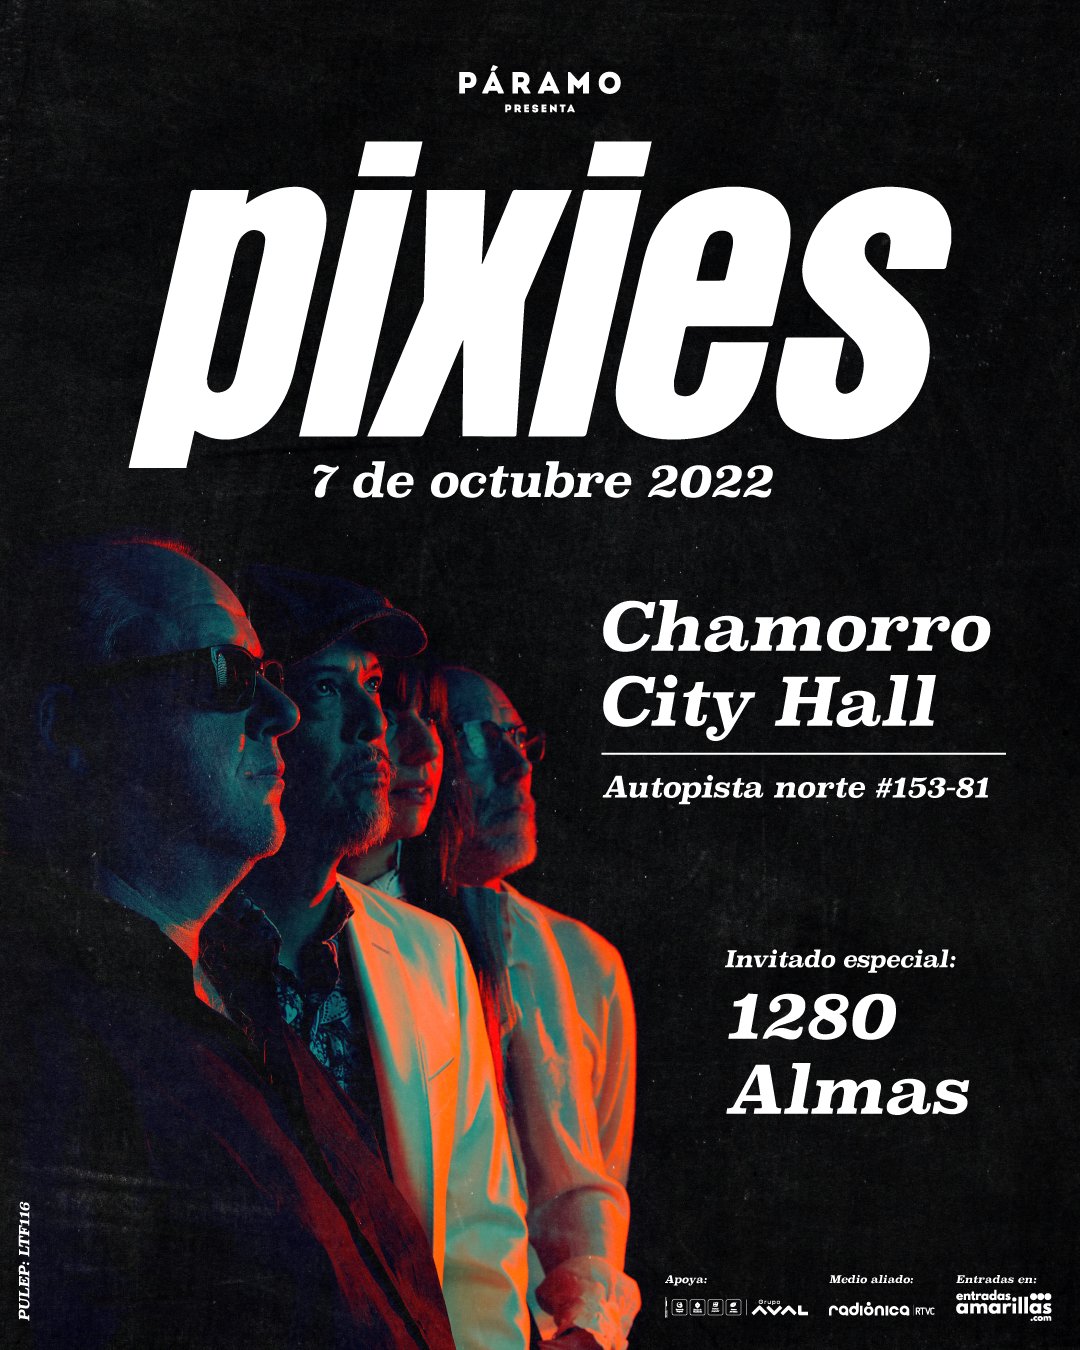 Las 1.280 Almas será el artista invitado al concierto. Foto: @Pixes Twitter.